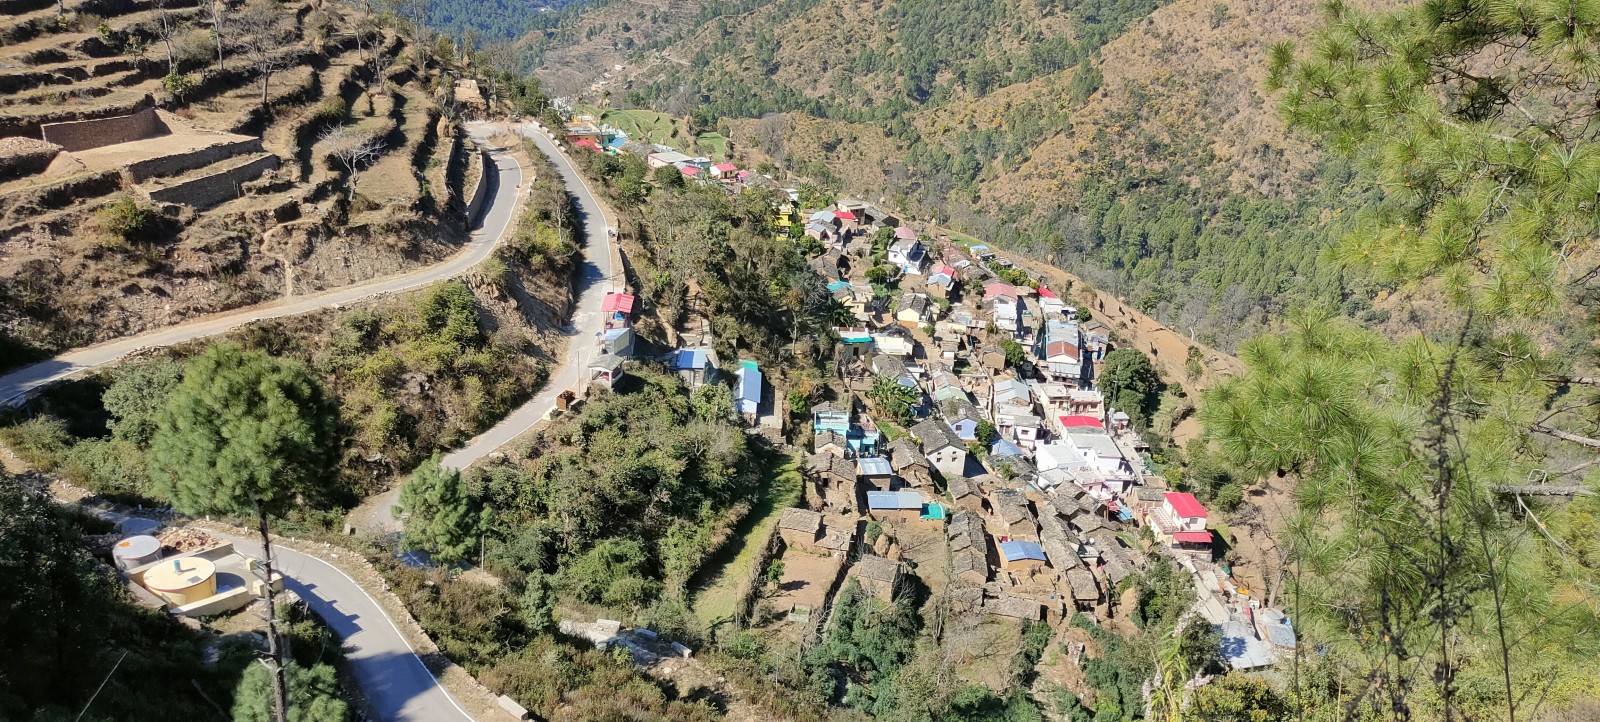 Kathur village, Pauri Garhwal